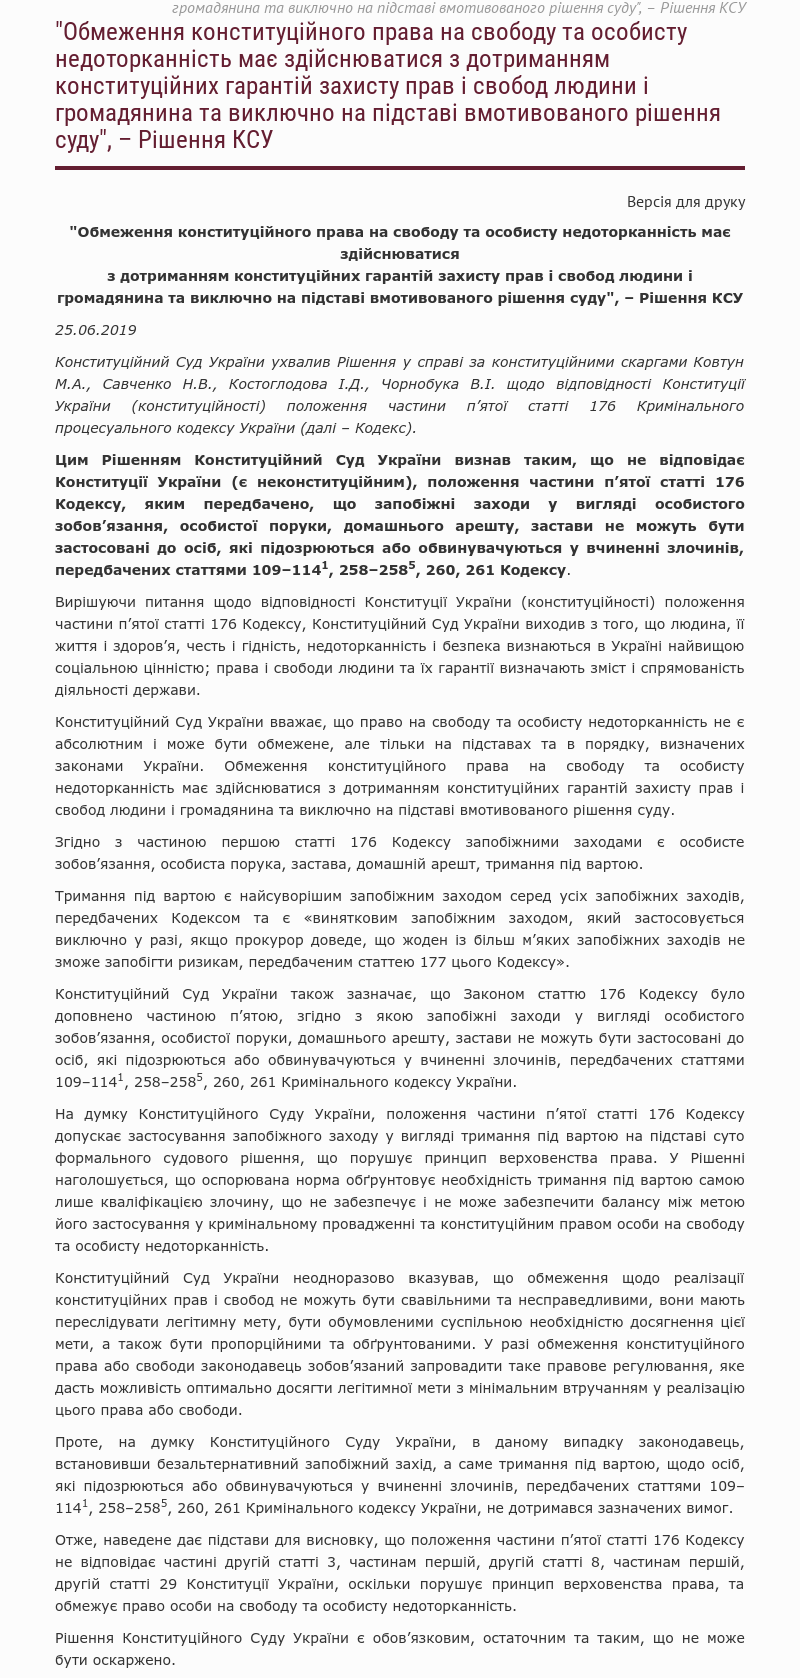 Конституційний суд задовольнив скаргу Надії Савченко